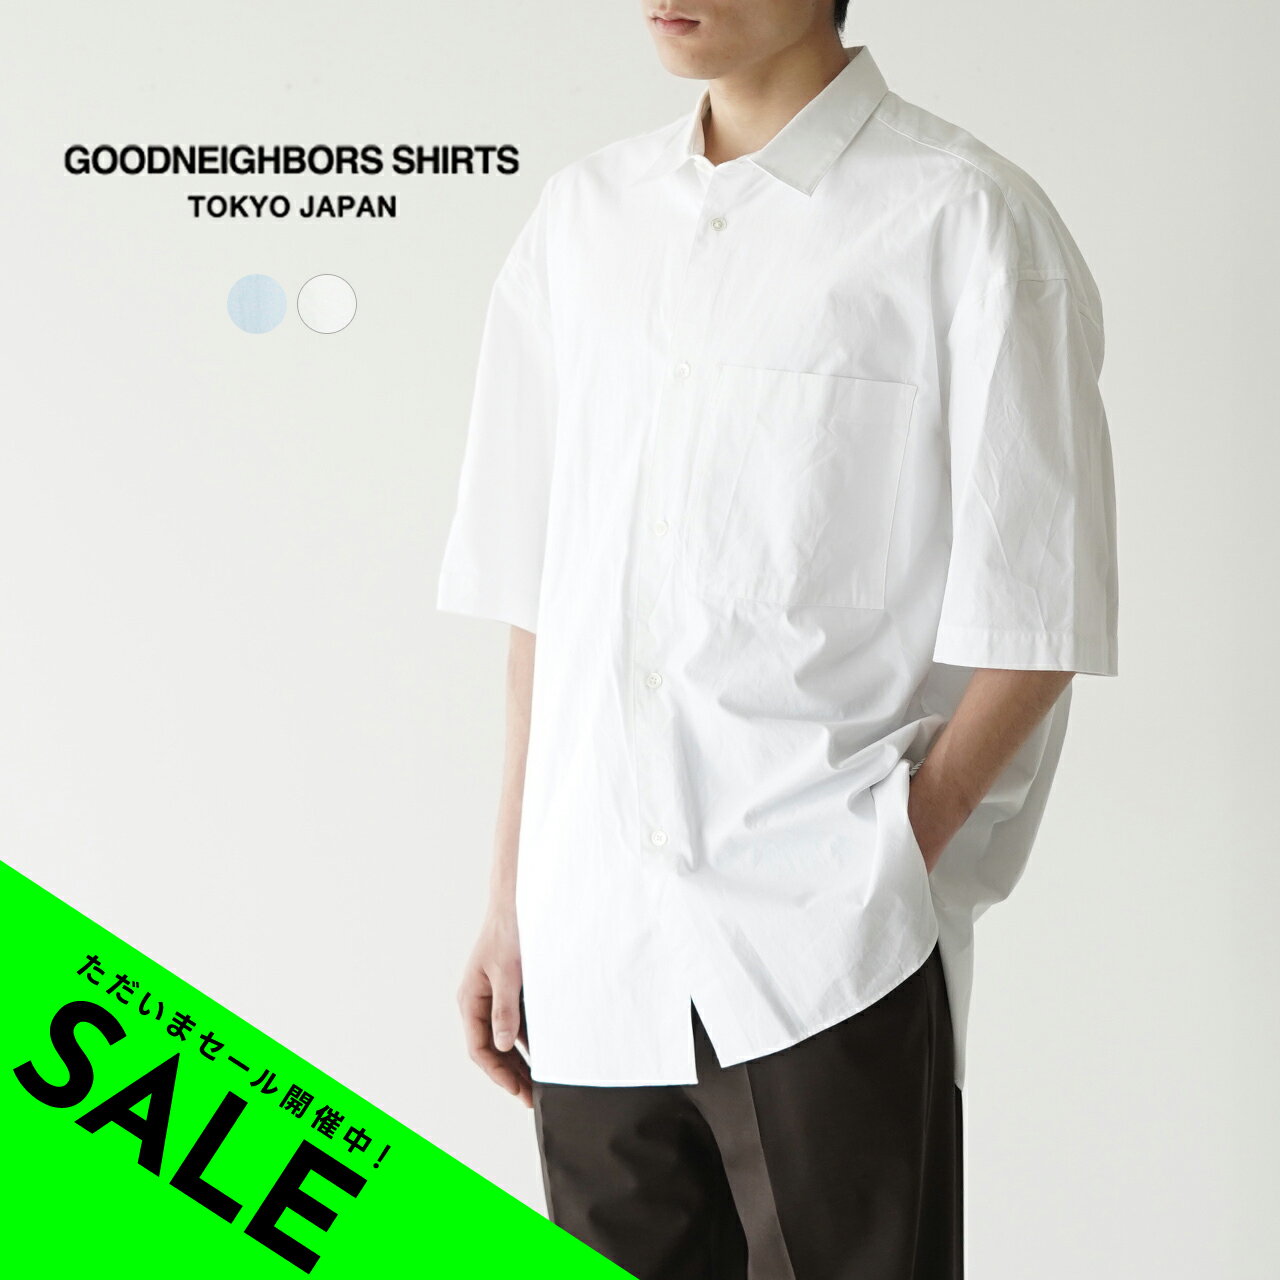 グッドネイバーズシャツ GOODNEIGHBORS SHIRTS ジーン レギュラーカラー ショートスリーブシャツ JEAN REGULAR COLLAR S S SH メンズ BCS-0500603 xp10